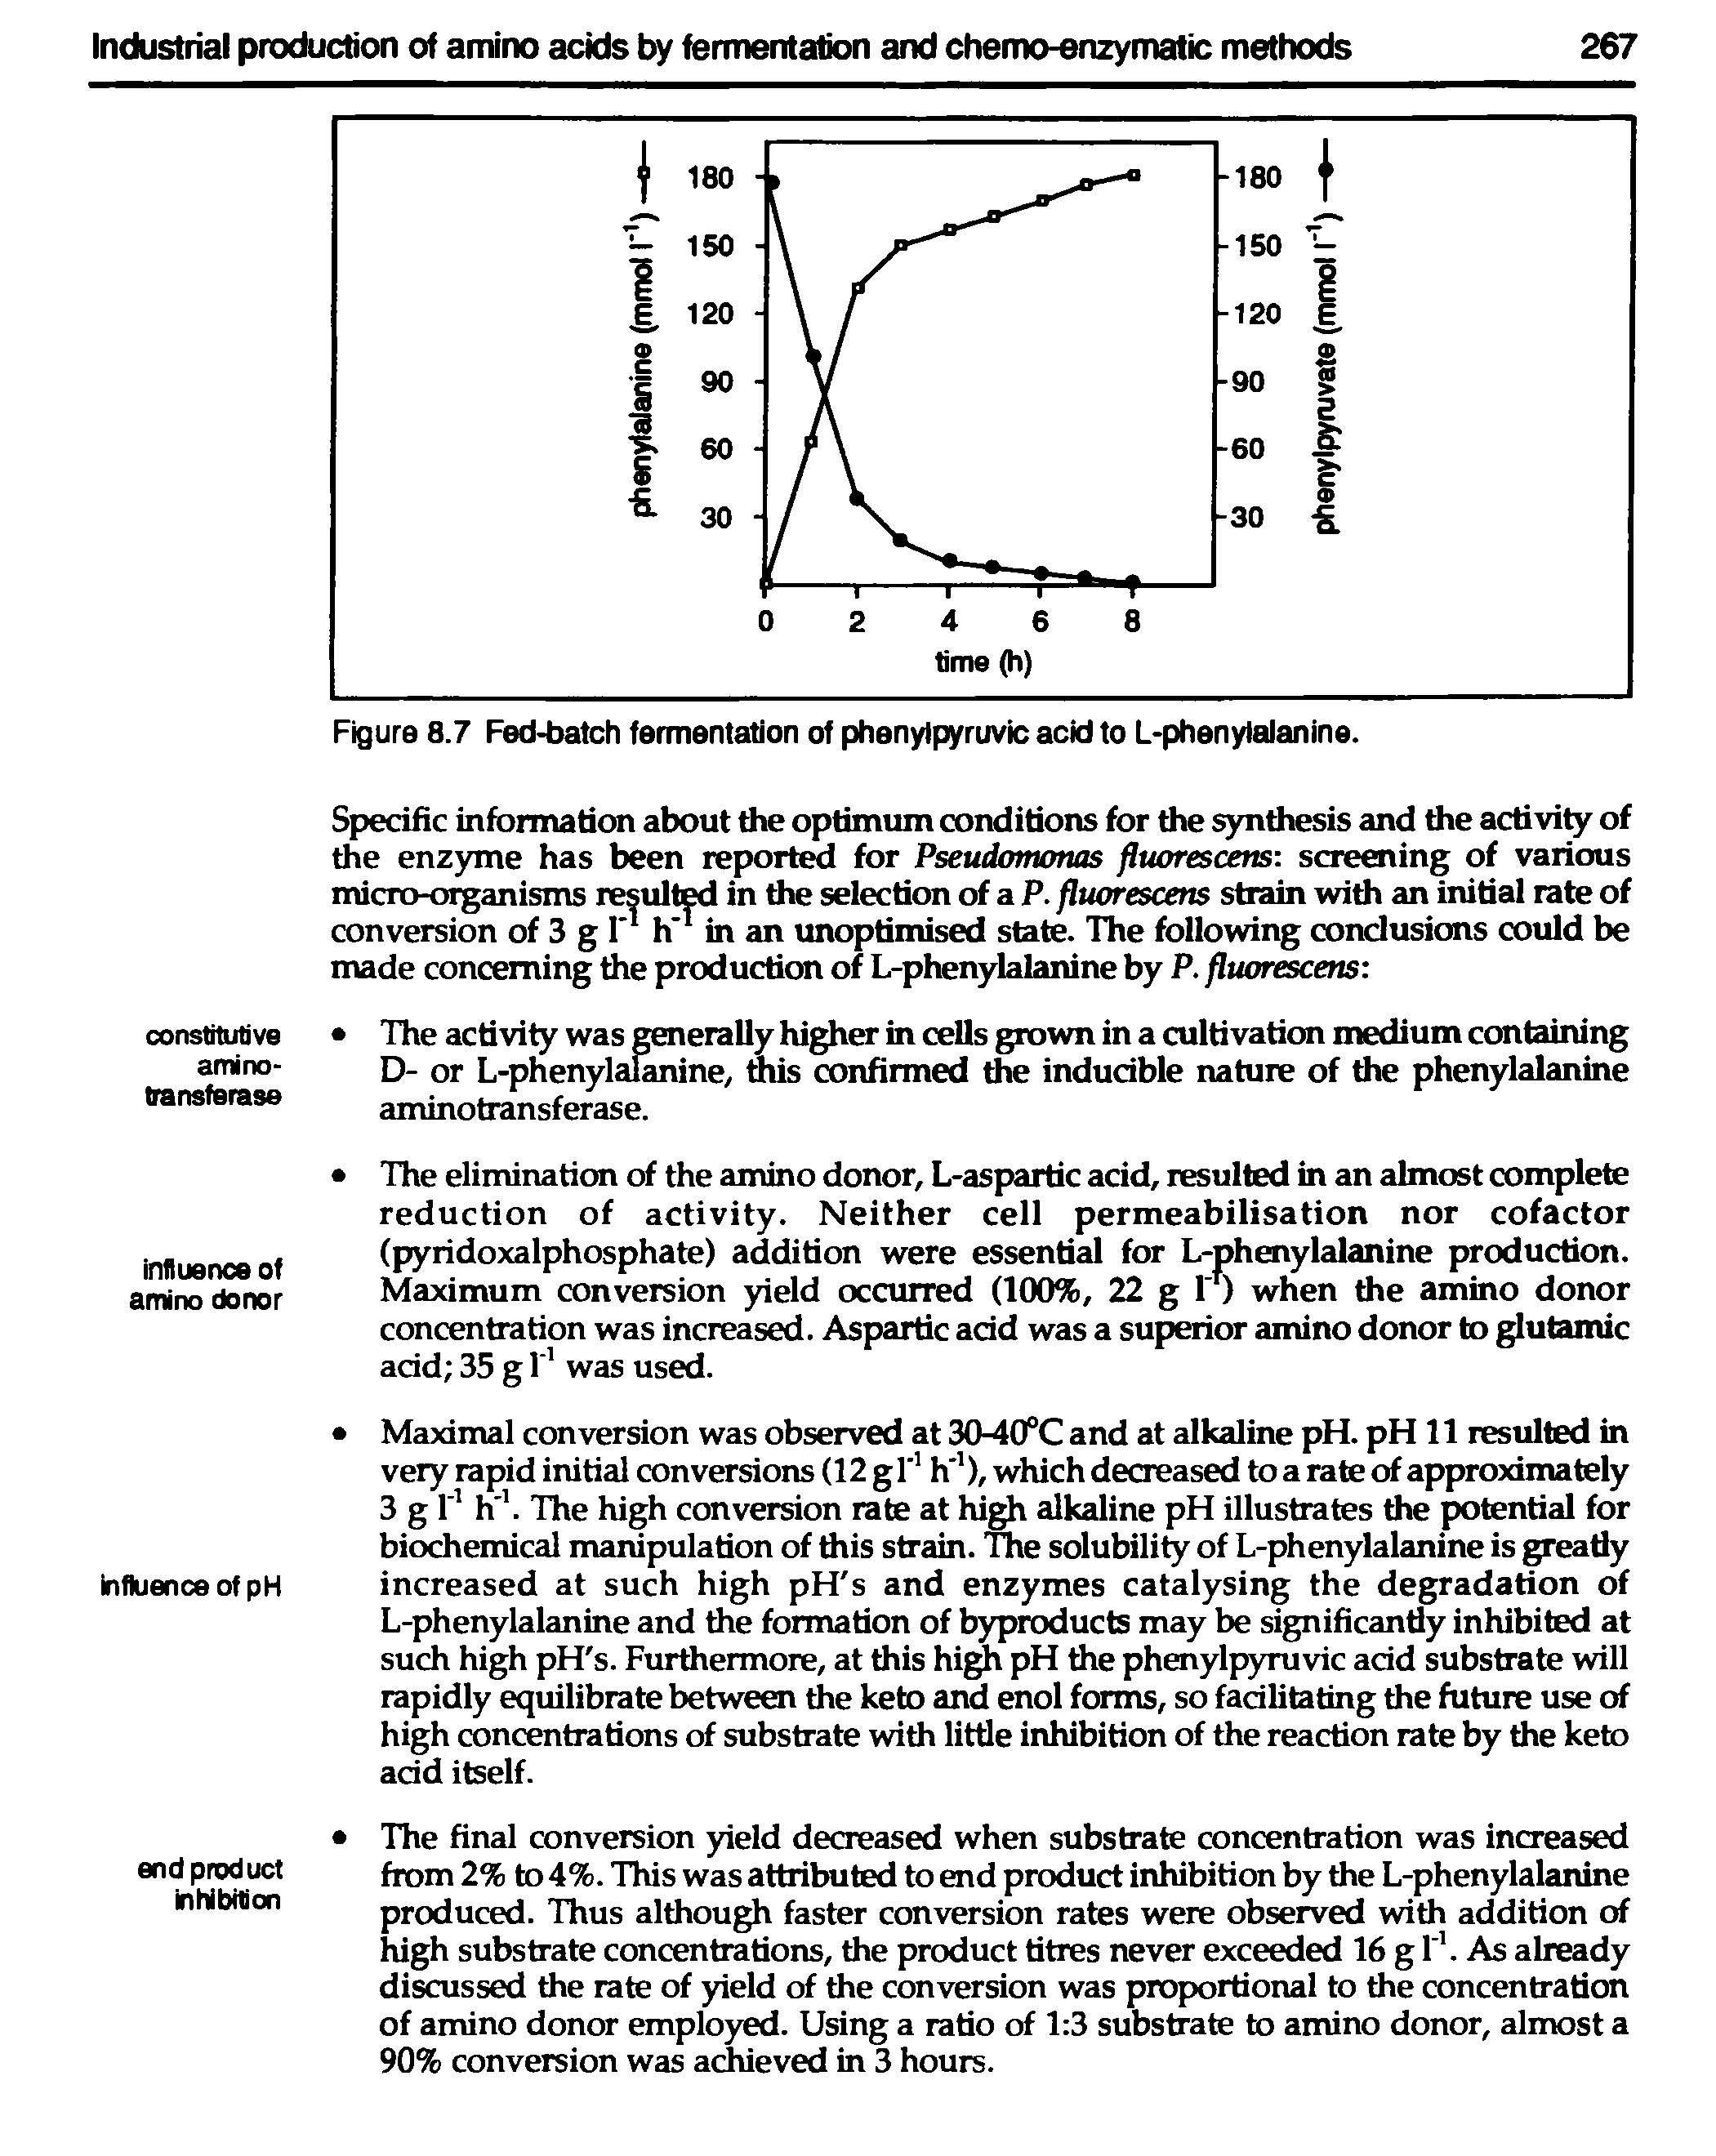 Figure 8.7 Fed-batch fermentation of phenylpyruvic acid to L-phenylalanine.